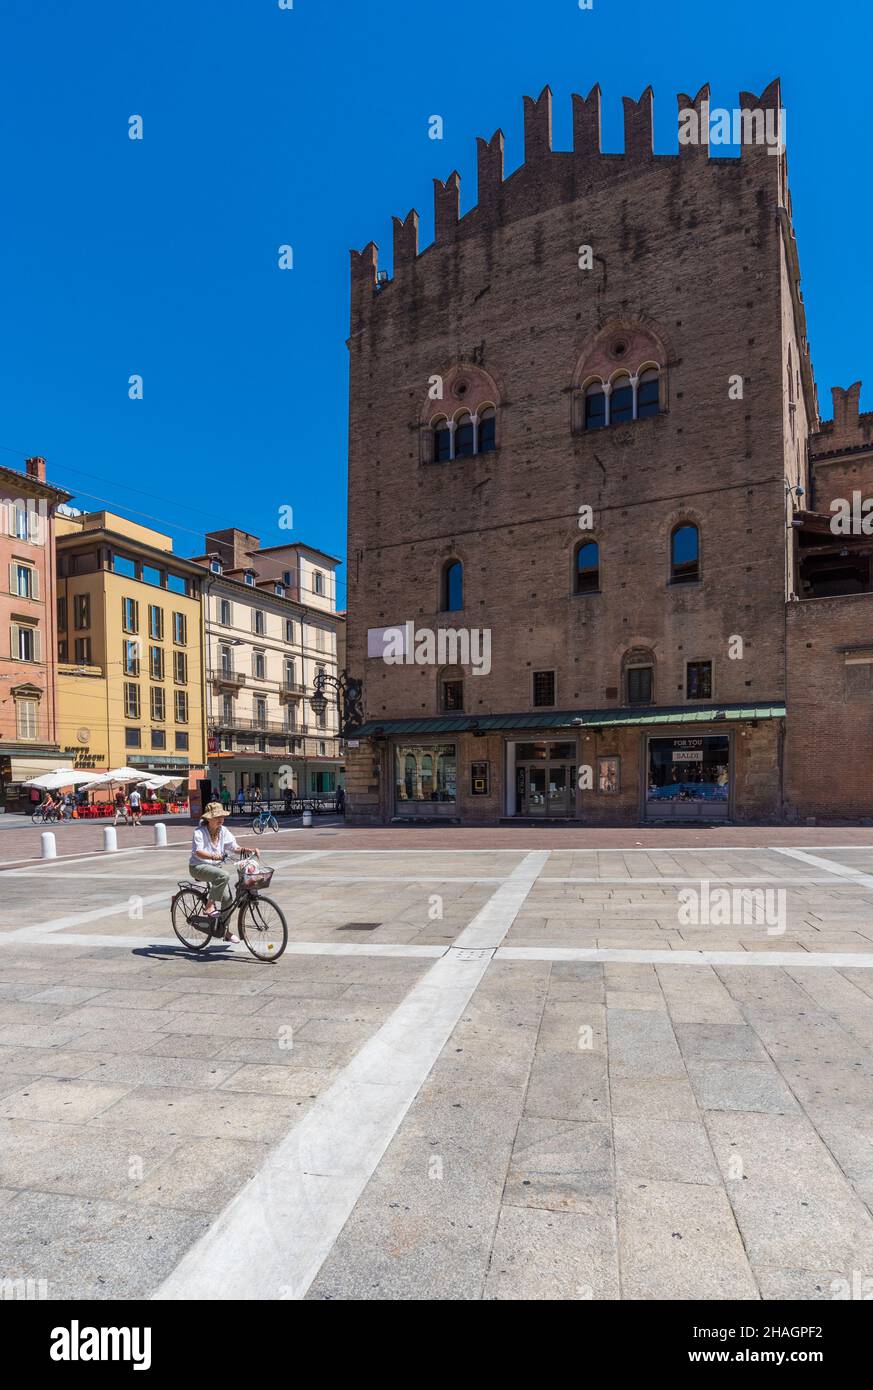 Bologna (Italien) - Ein Blick auf das historische Zentrum von Bologna, die Stadt der Veranden und die Hauptstadt der Region Emilia-Romagna, Norditalien Stockfoto